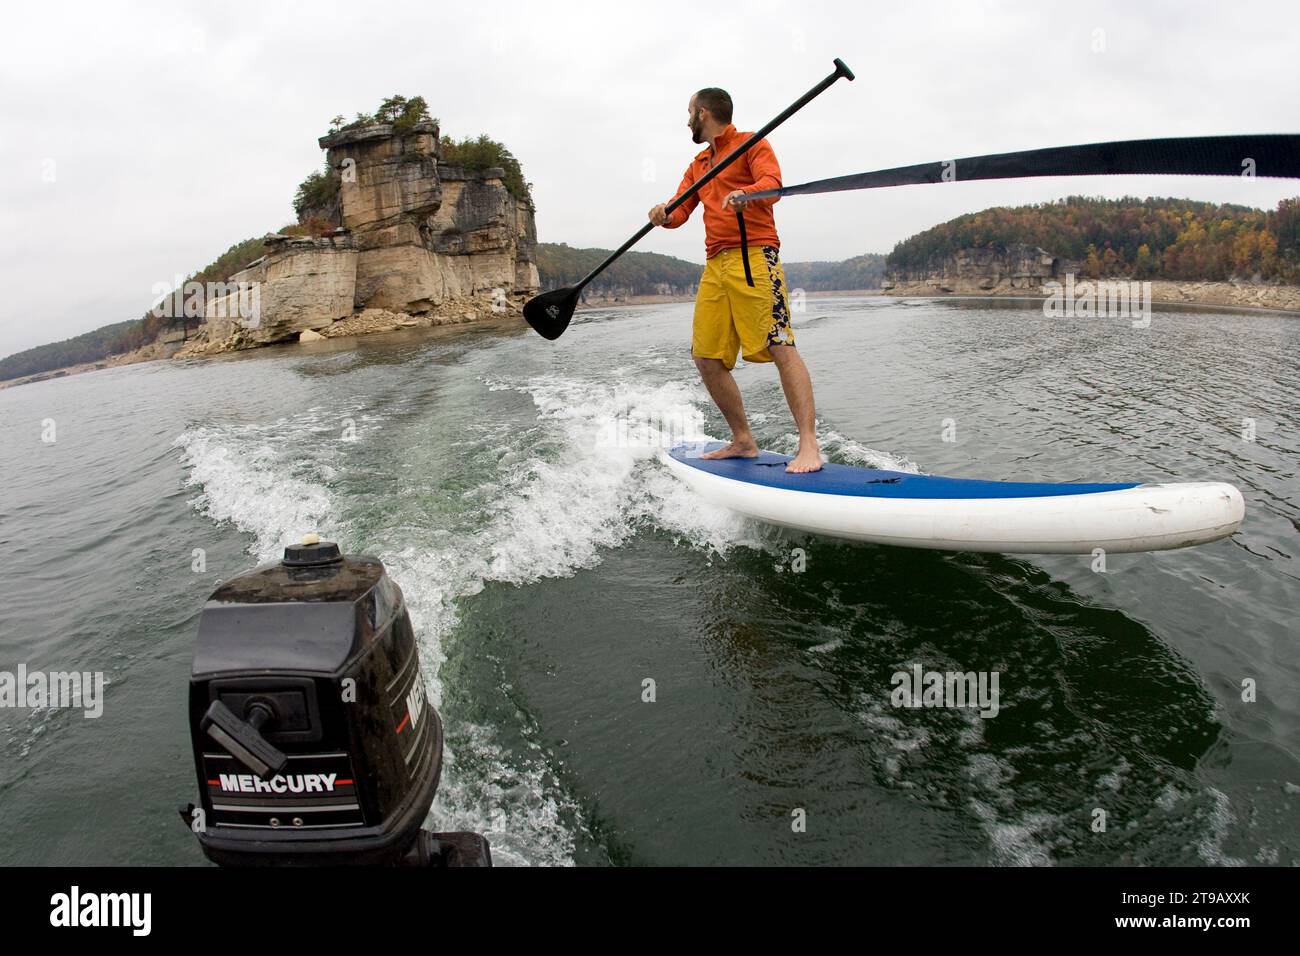 Ein Mann steht auf dem Paddleboarder, der von einem kleinen Boot gezogen wird. Stockfoto